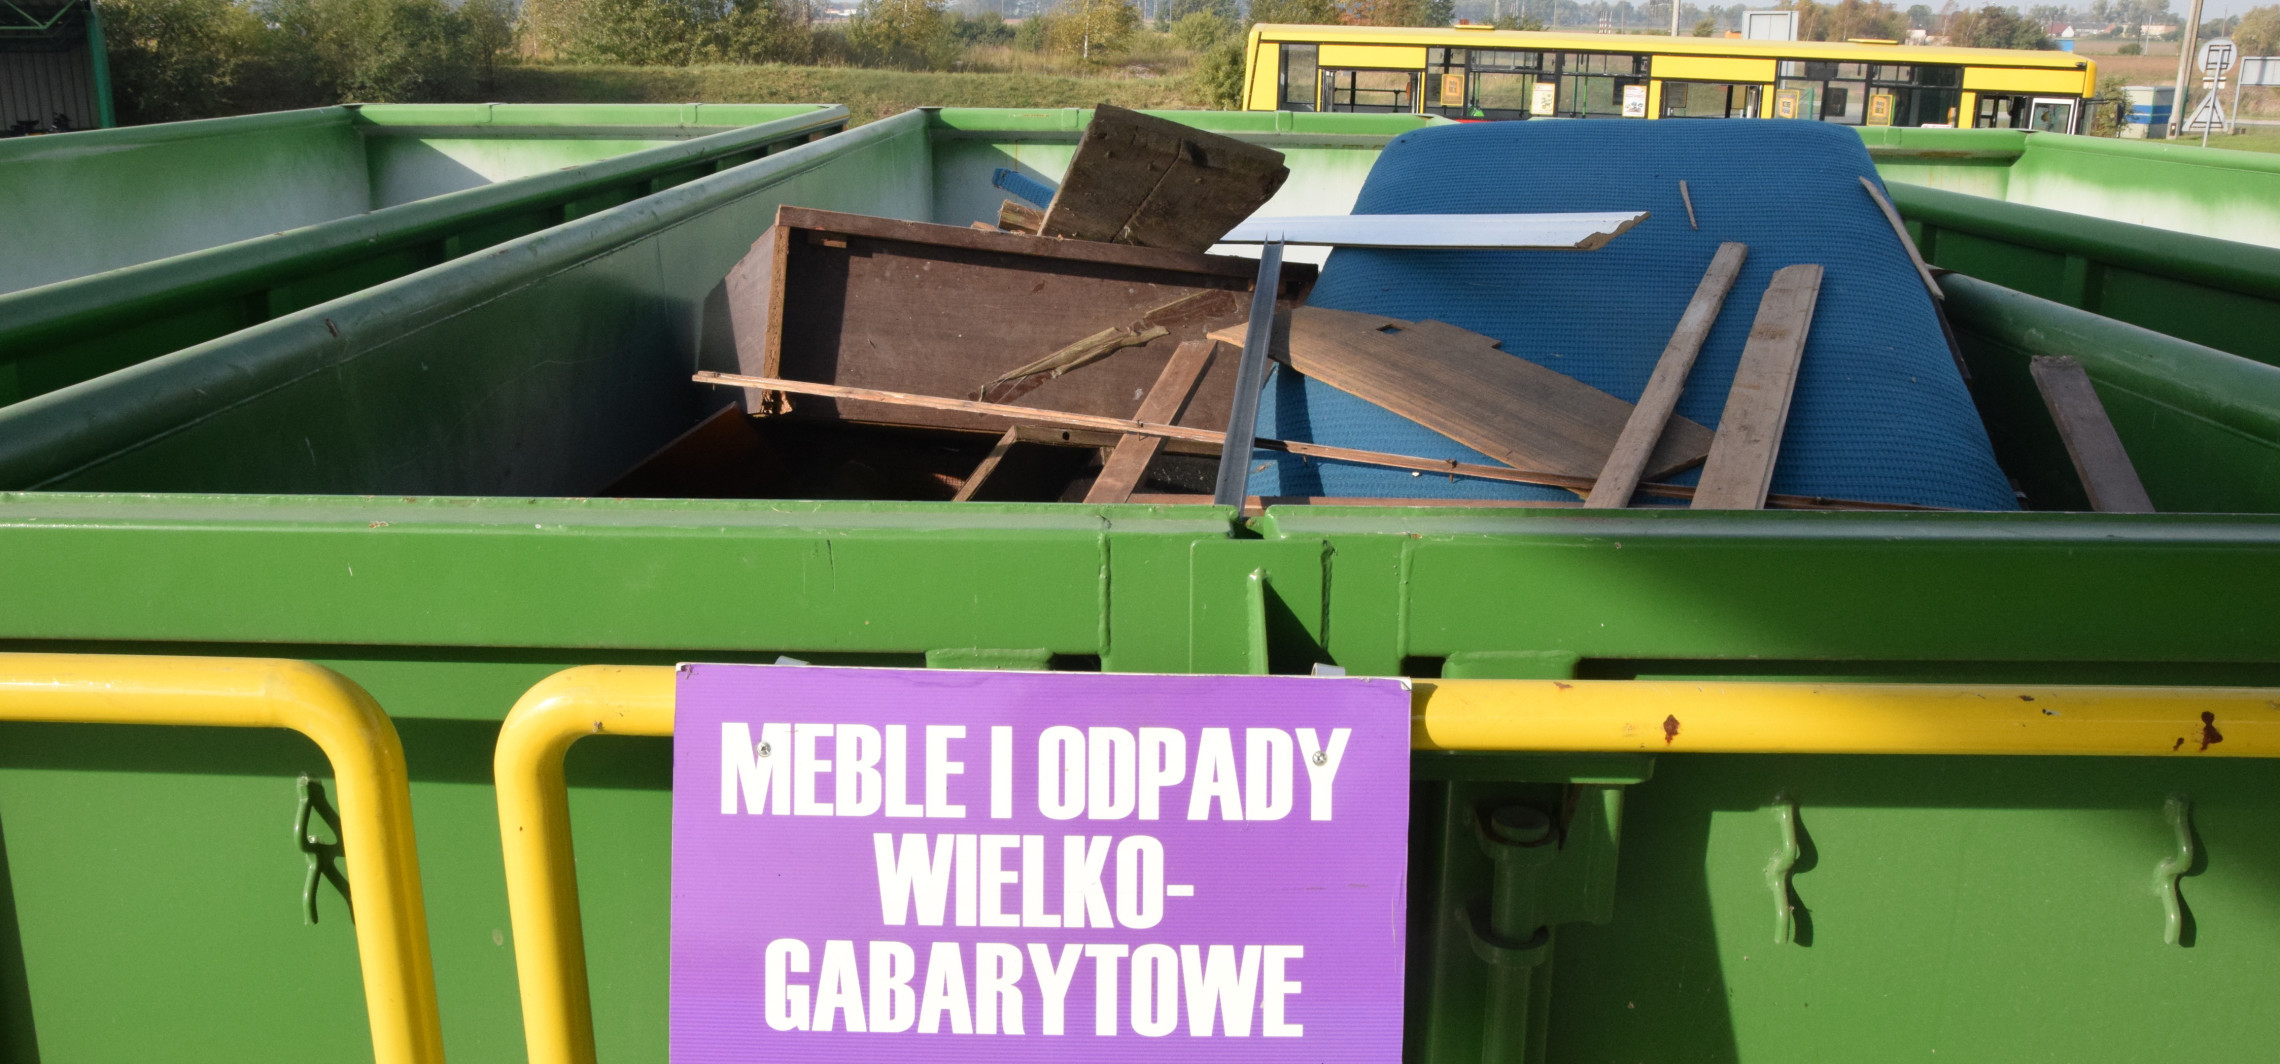 Inowrocław - Za darmo wywiozą odpady wielkogabarytowe